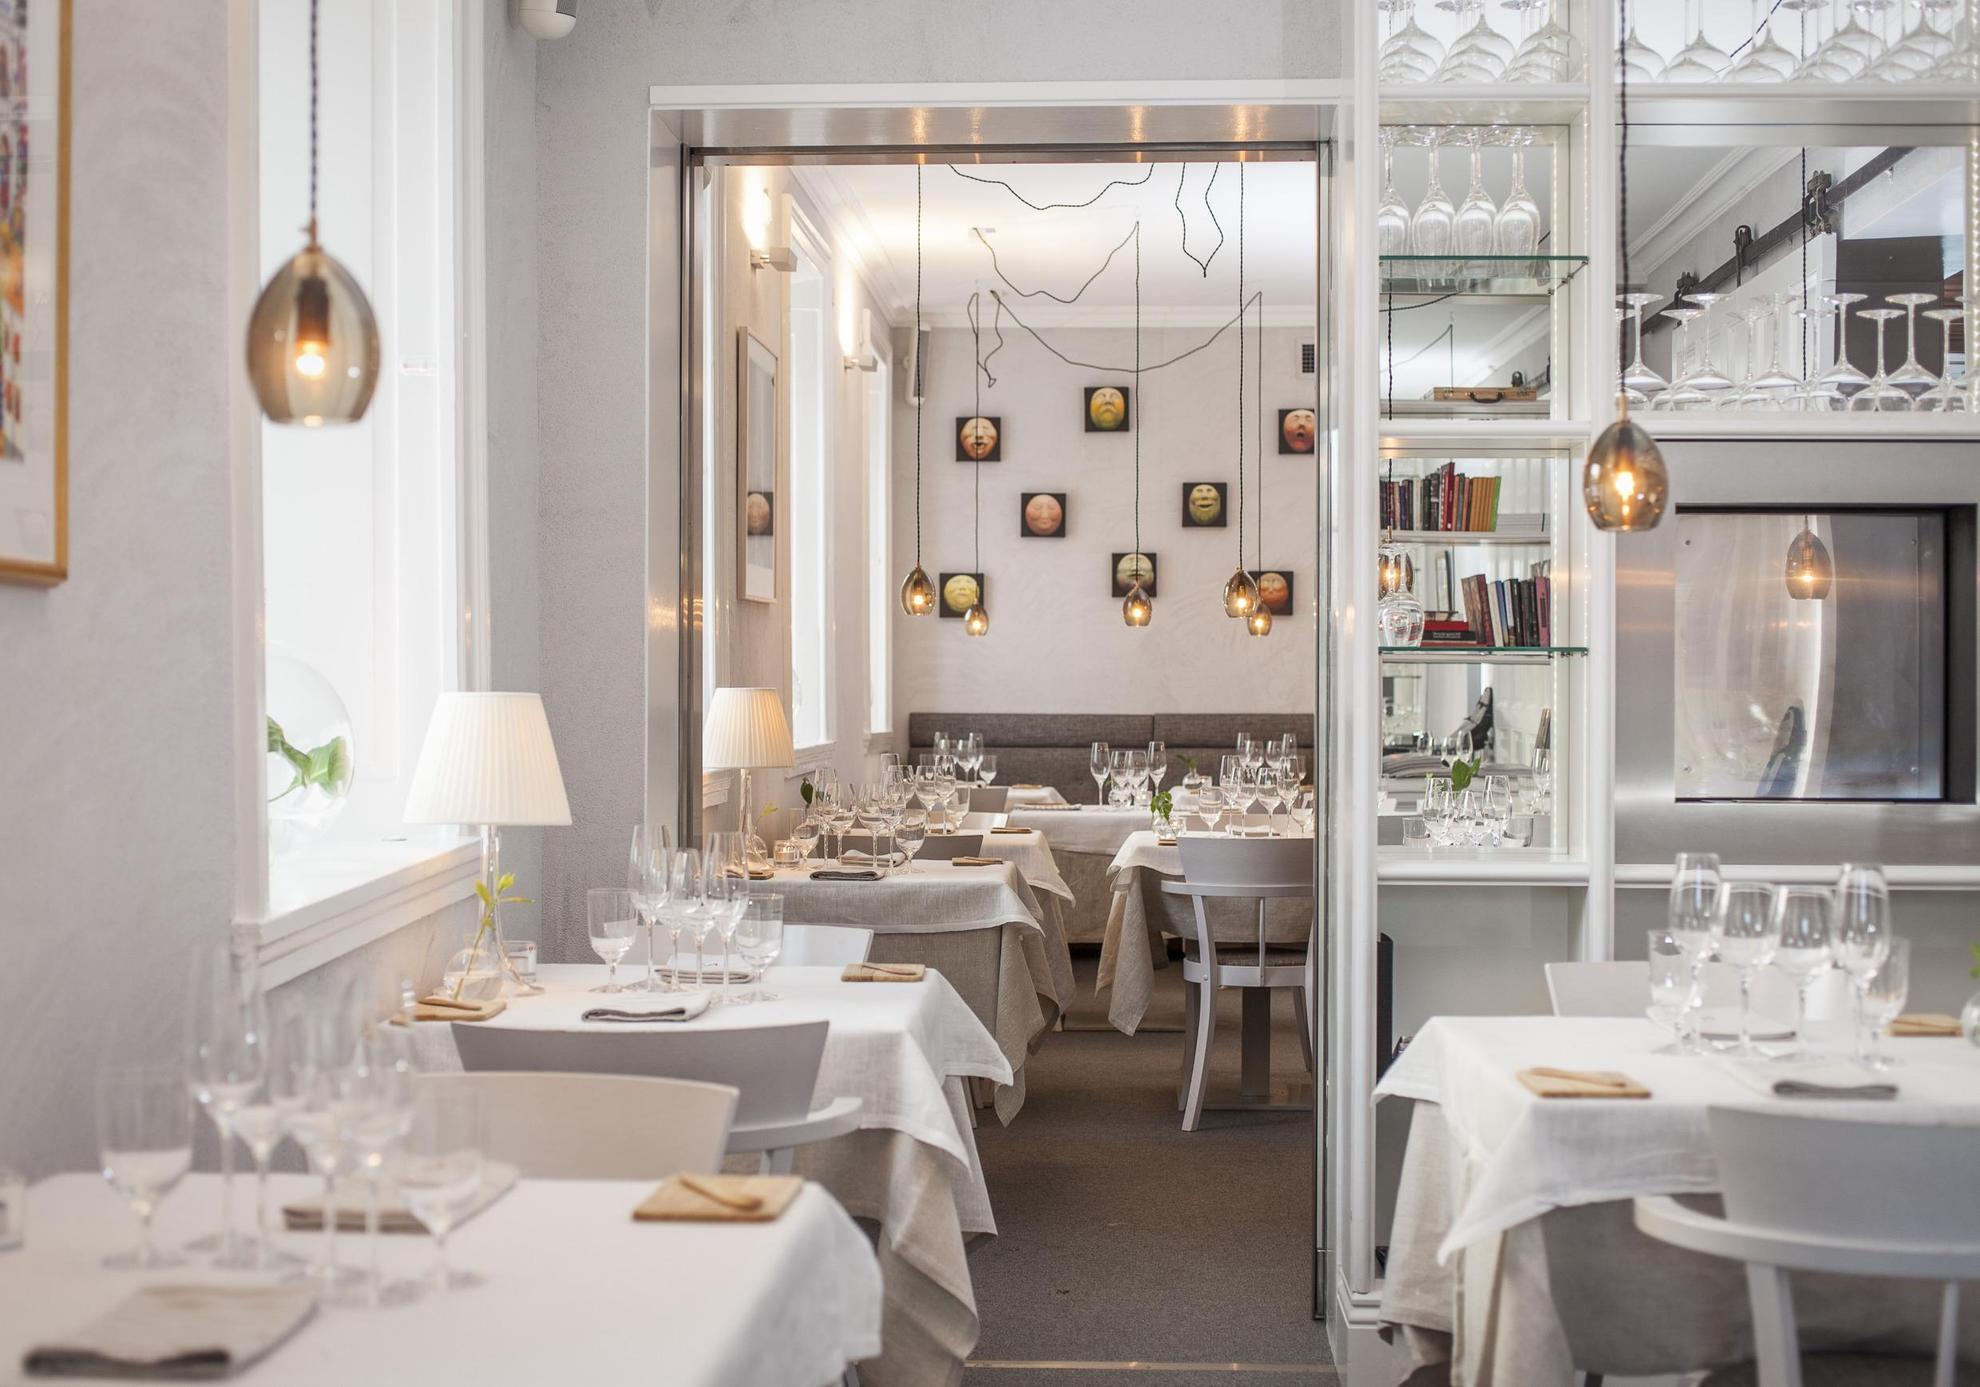 In een restaurant met witte muren zijn de tafels gedekt met witte tafelkleden, linnen servetten en wijnglazen. Aan het plafond hangen lampen.